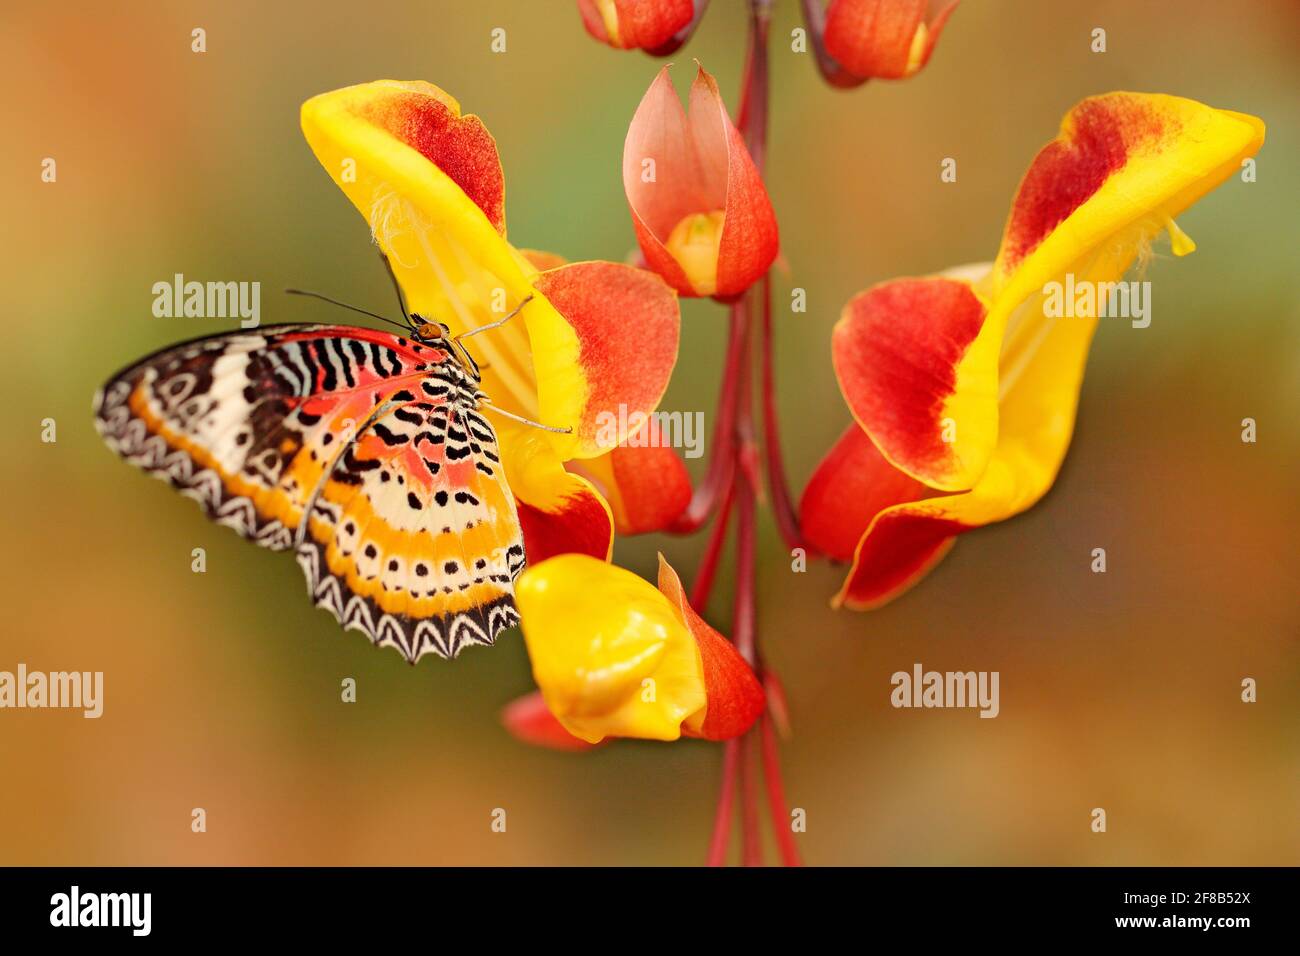 Céthosia cyane, léopard laquant, papillon tropical distribué de l'Inde à la Malaisie. Bel insecte assis sur la fleur rouge et jaune de l'arbre, nat Banque D'Images